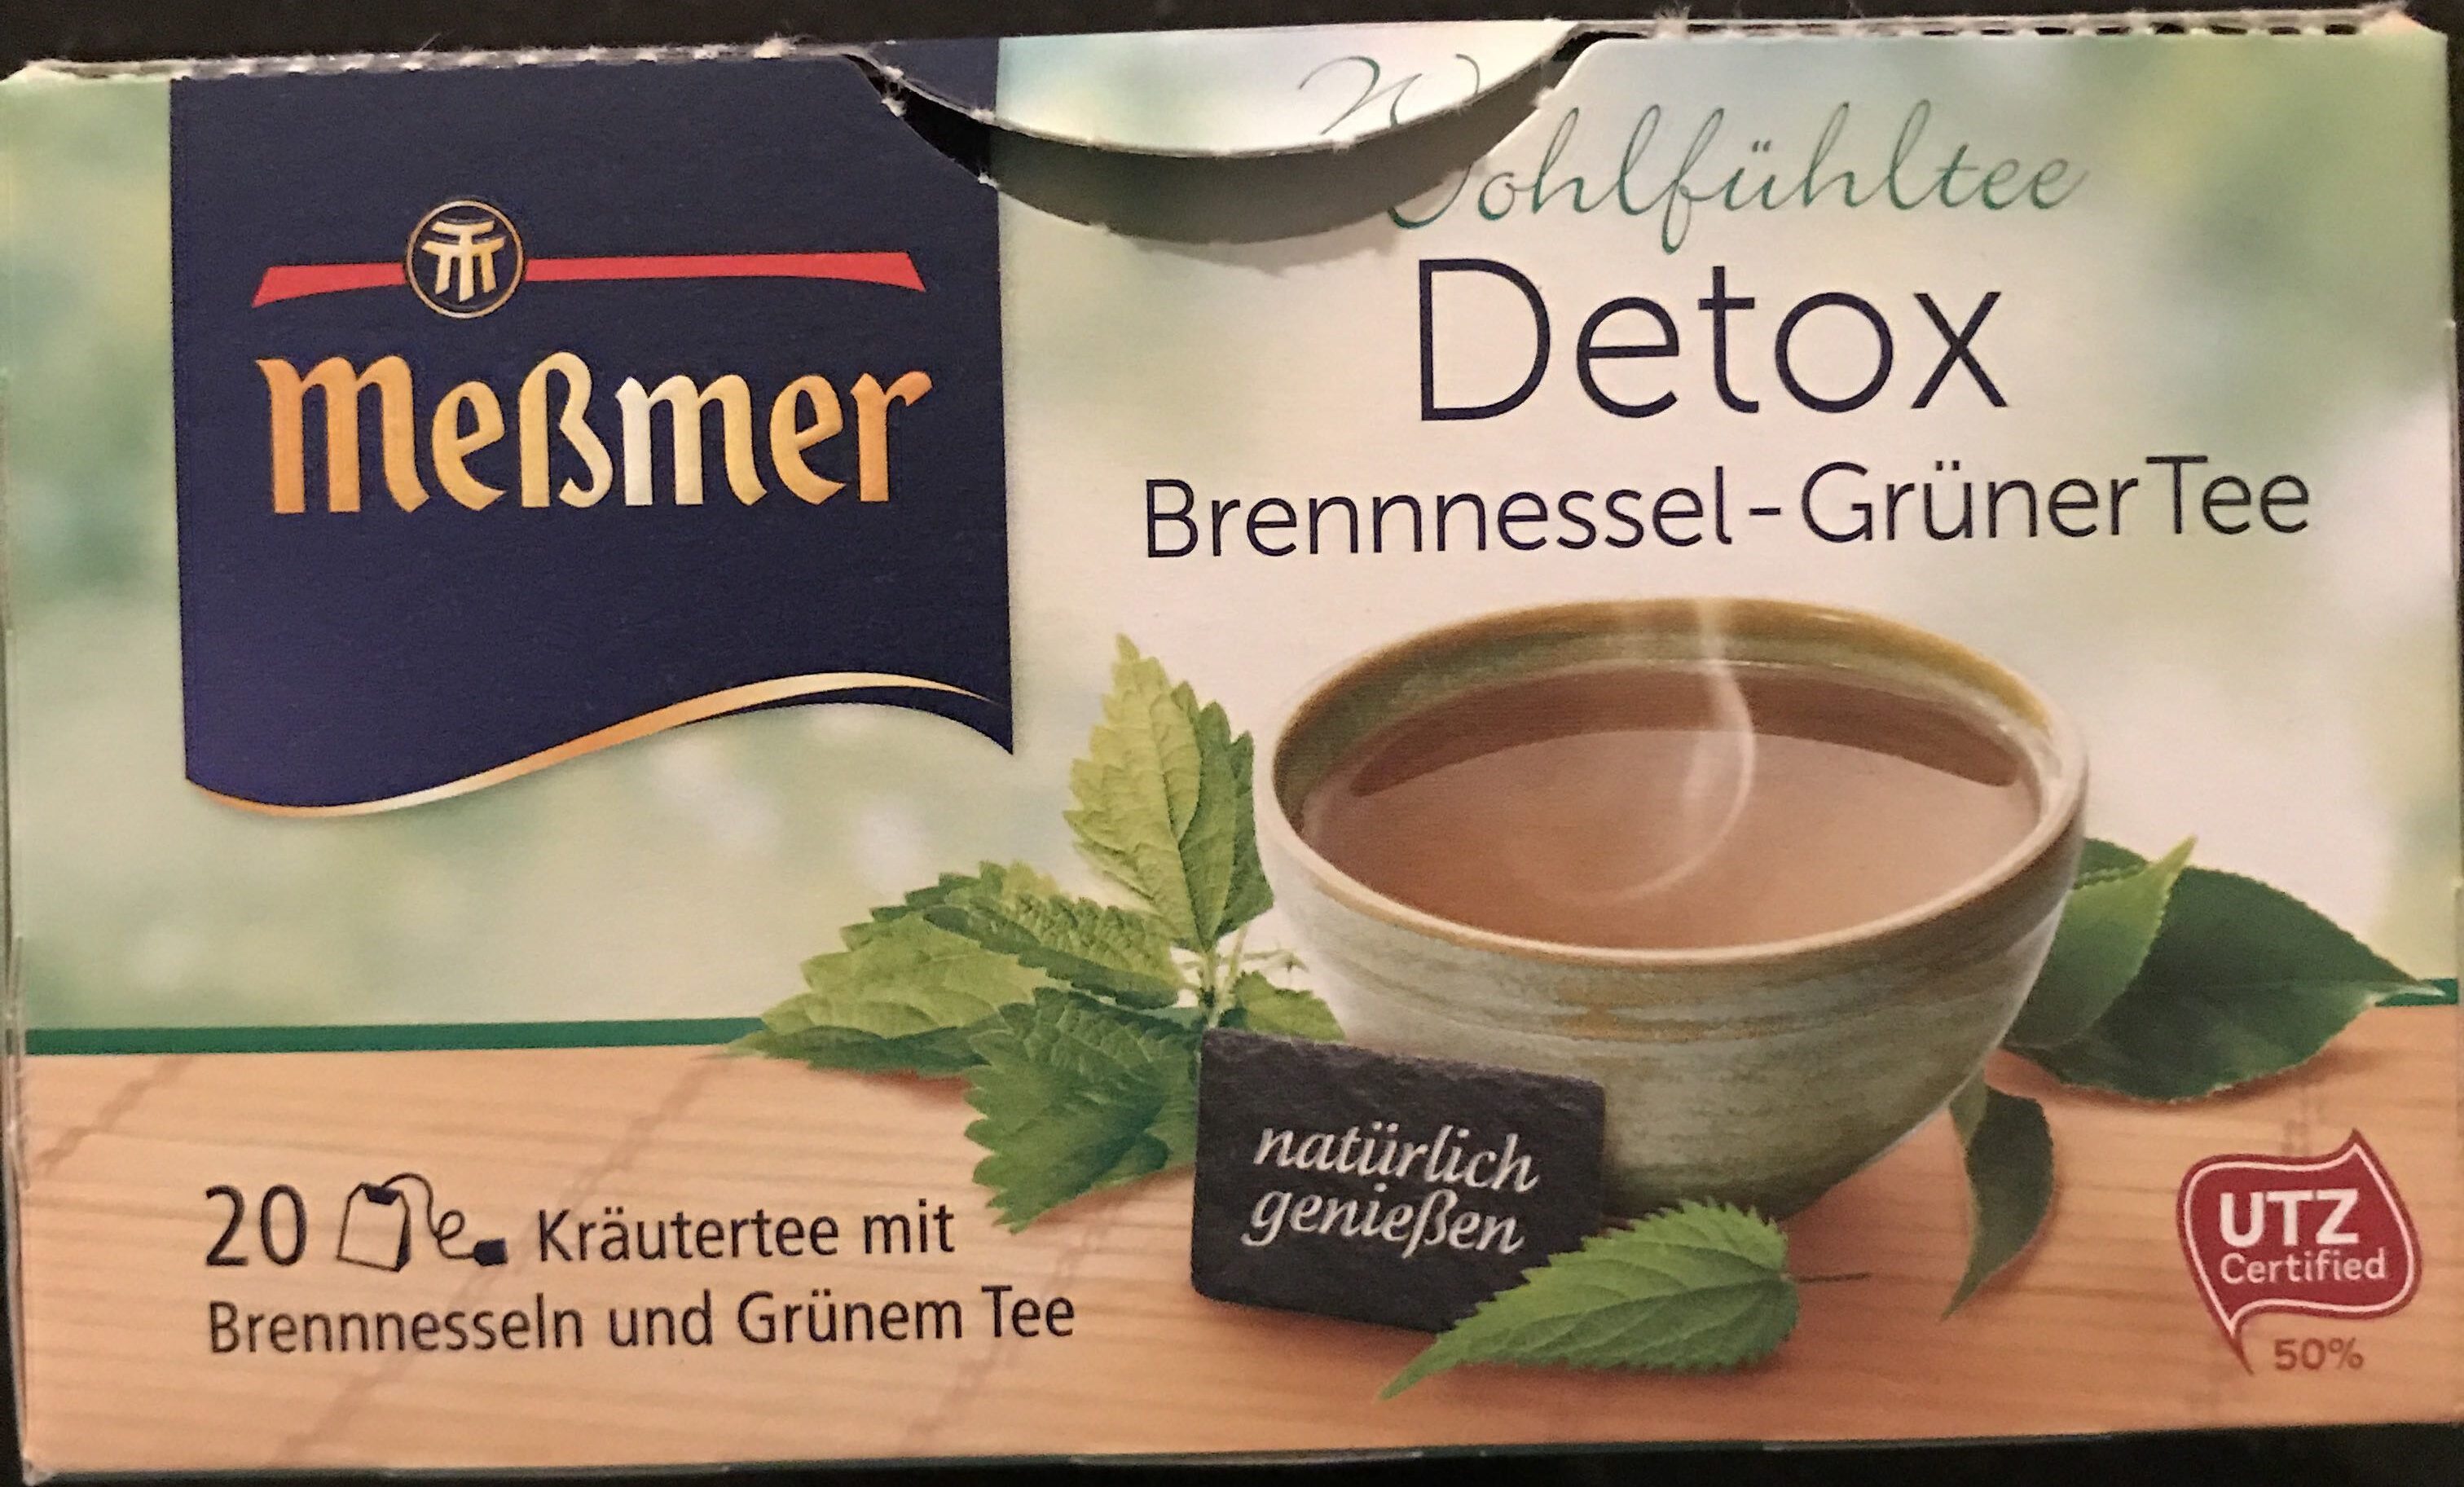 Detox Brennnessel-Grüner Tee - Produit - de